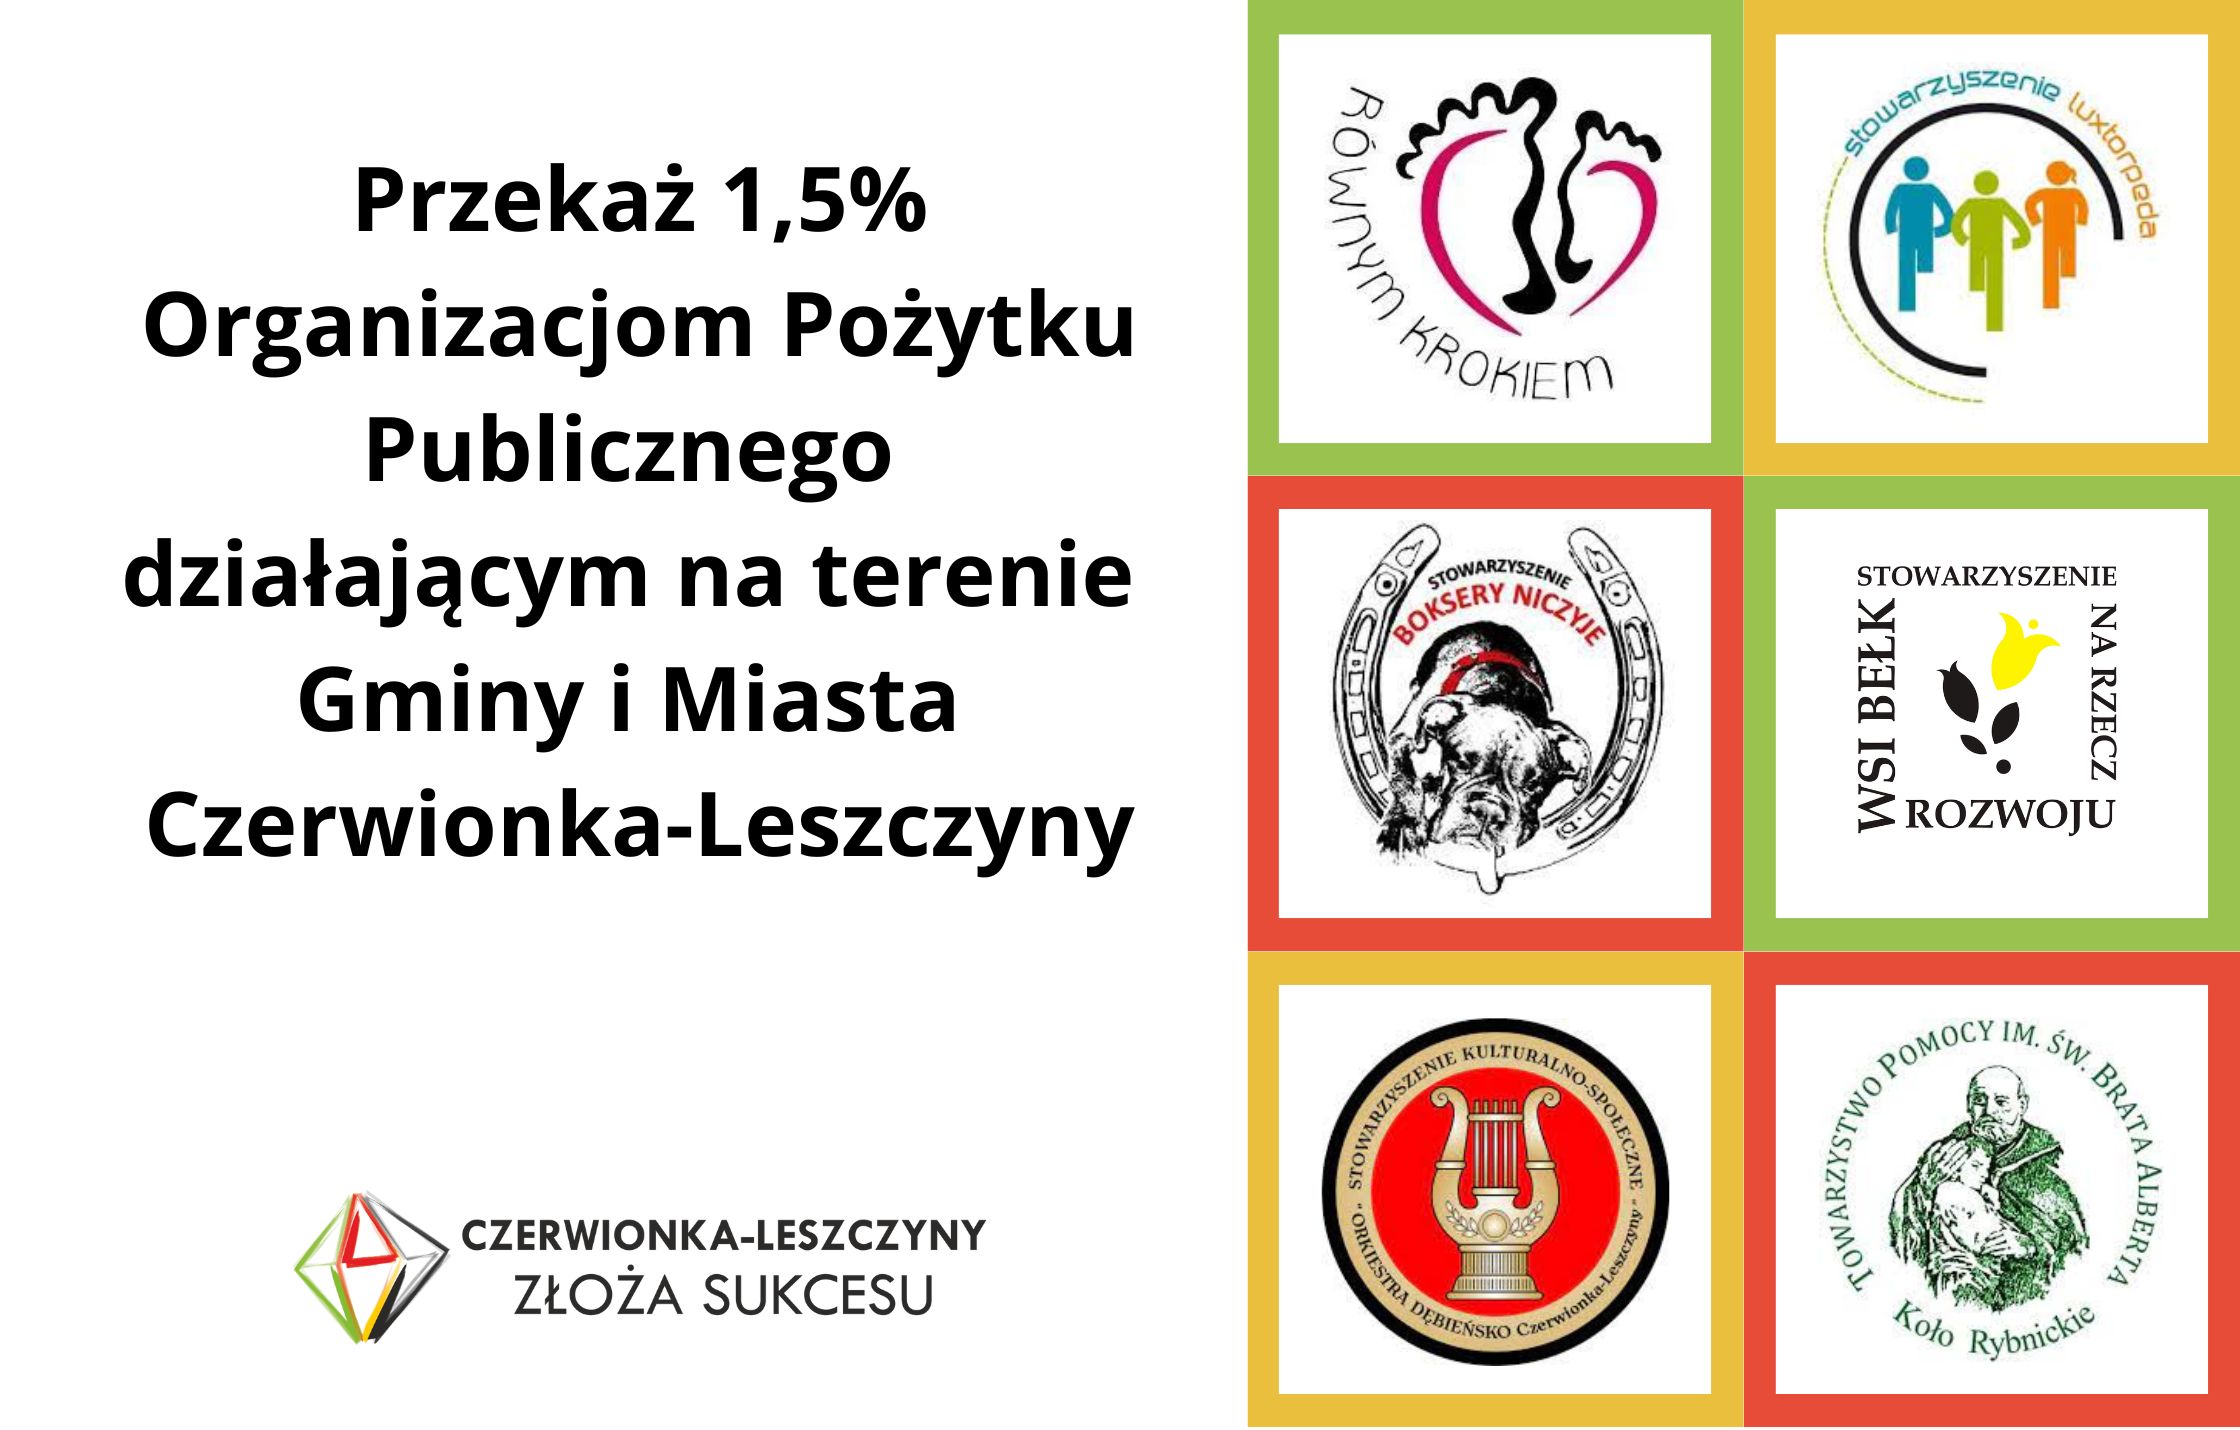 Przekaż 1,5% Organizacjom Pożytku Publicznego z terenu Czerwionki-Leszczyn